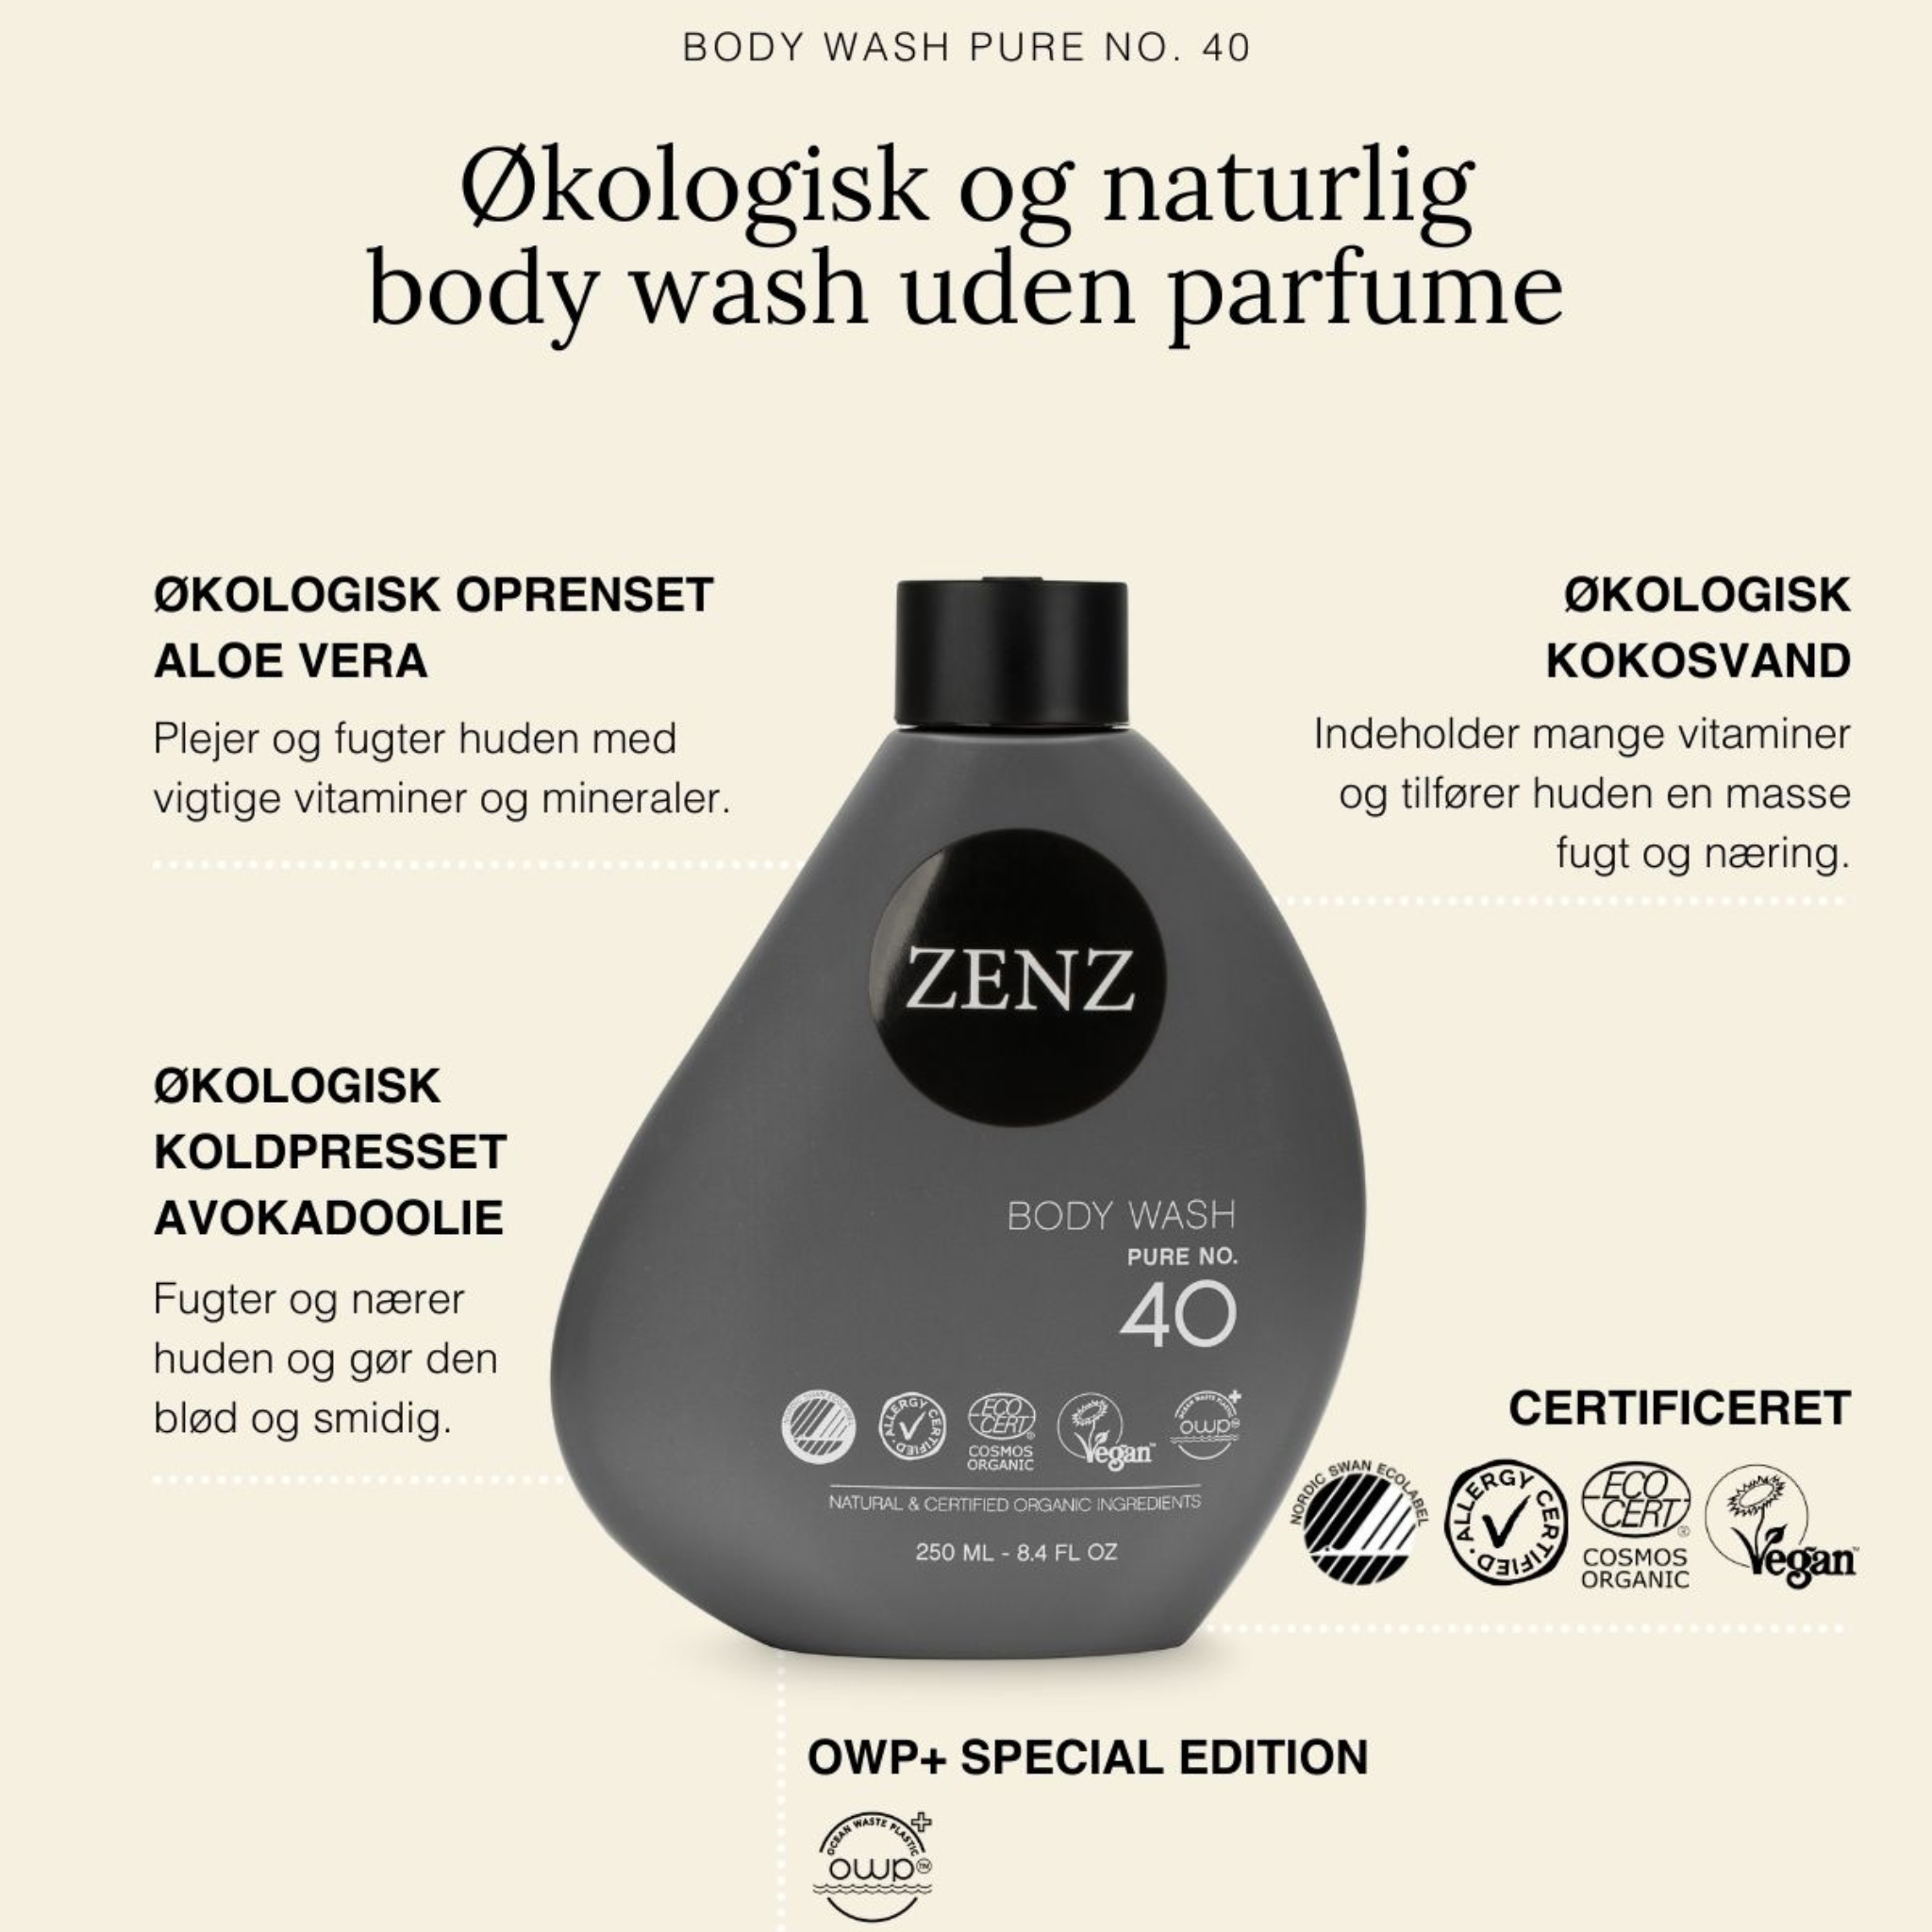 Allergivenlig kropssæbe med naturlige og certificeret økologiske ingredienser. Den er særlig velegnet til sensitiv hud. | ZENZ Organic